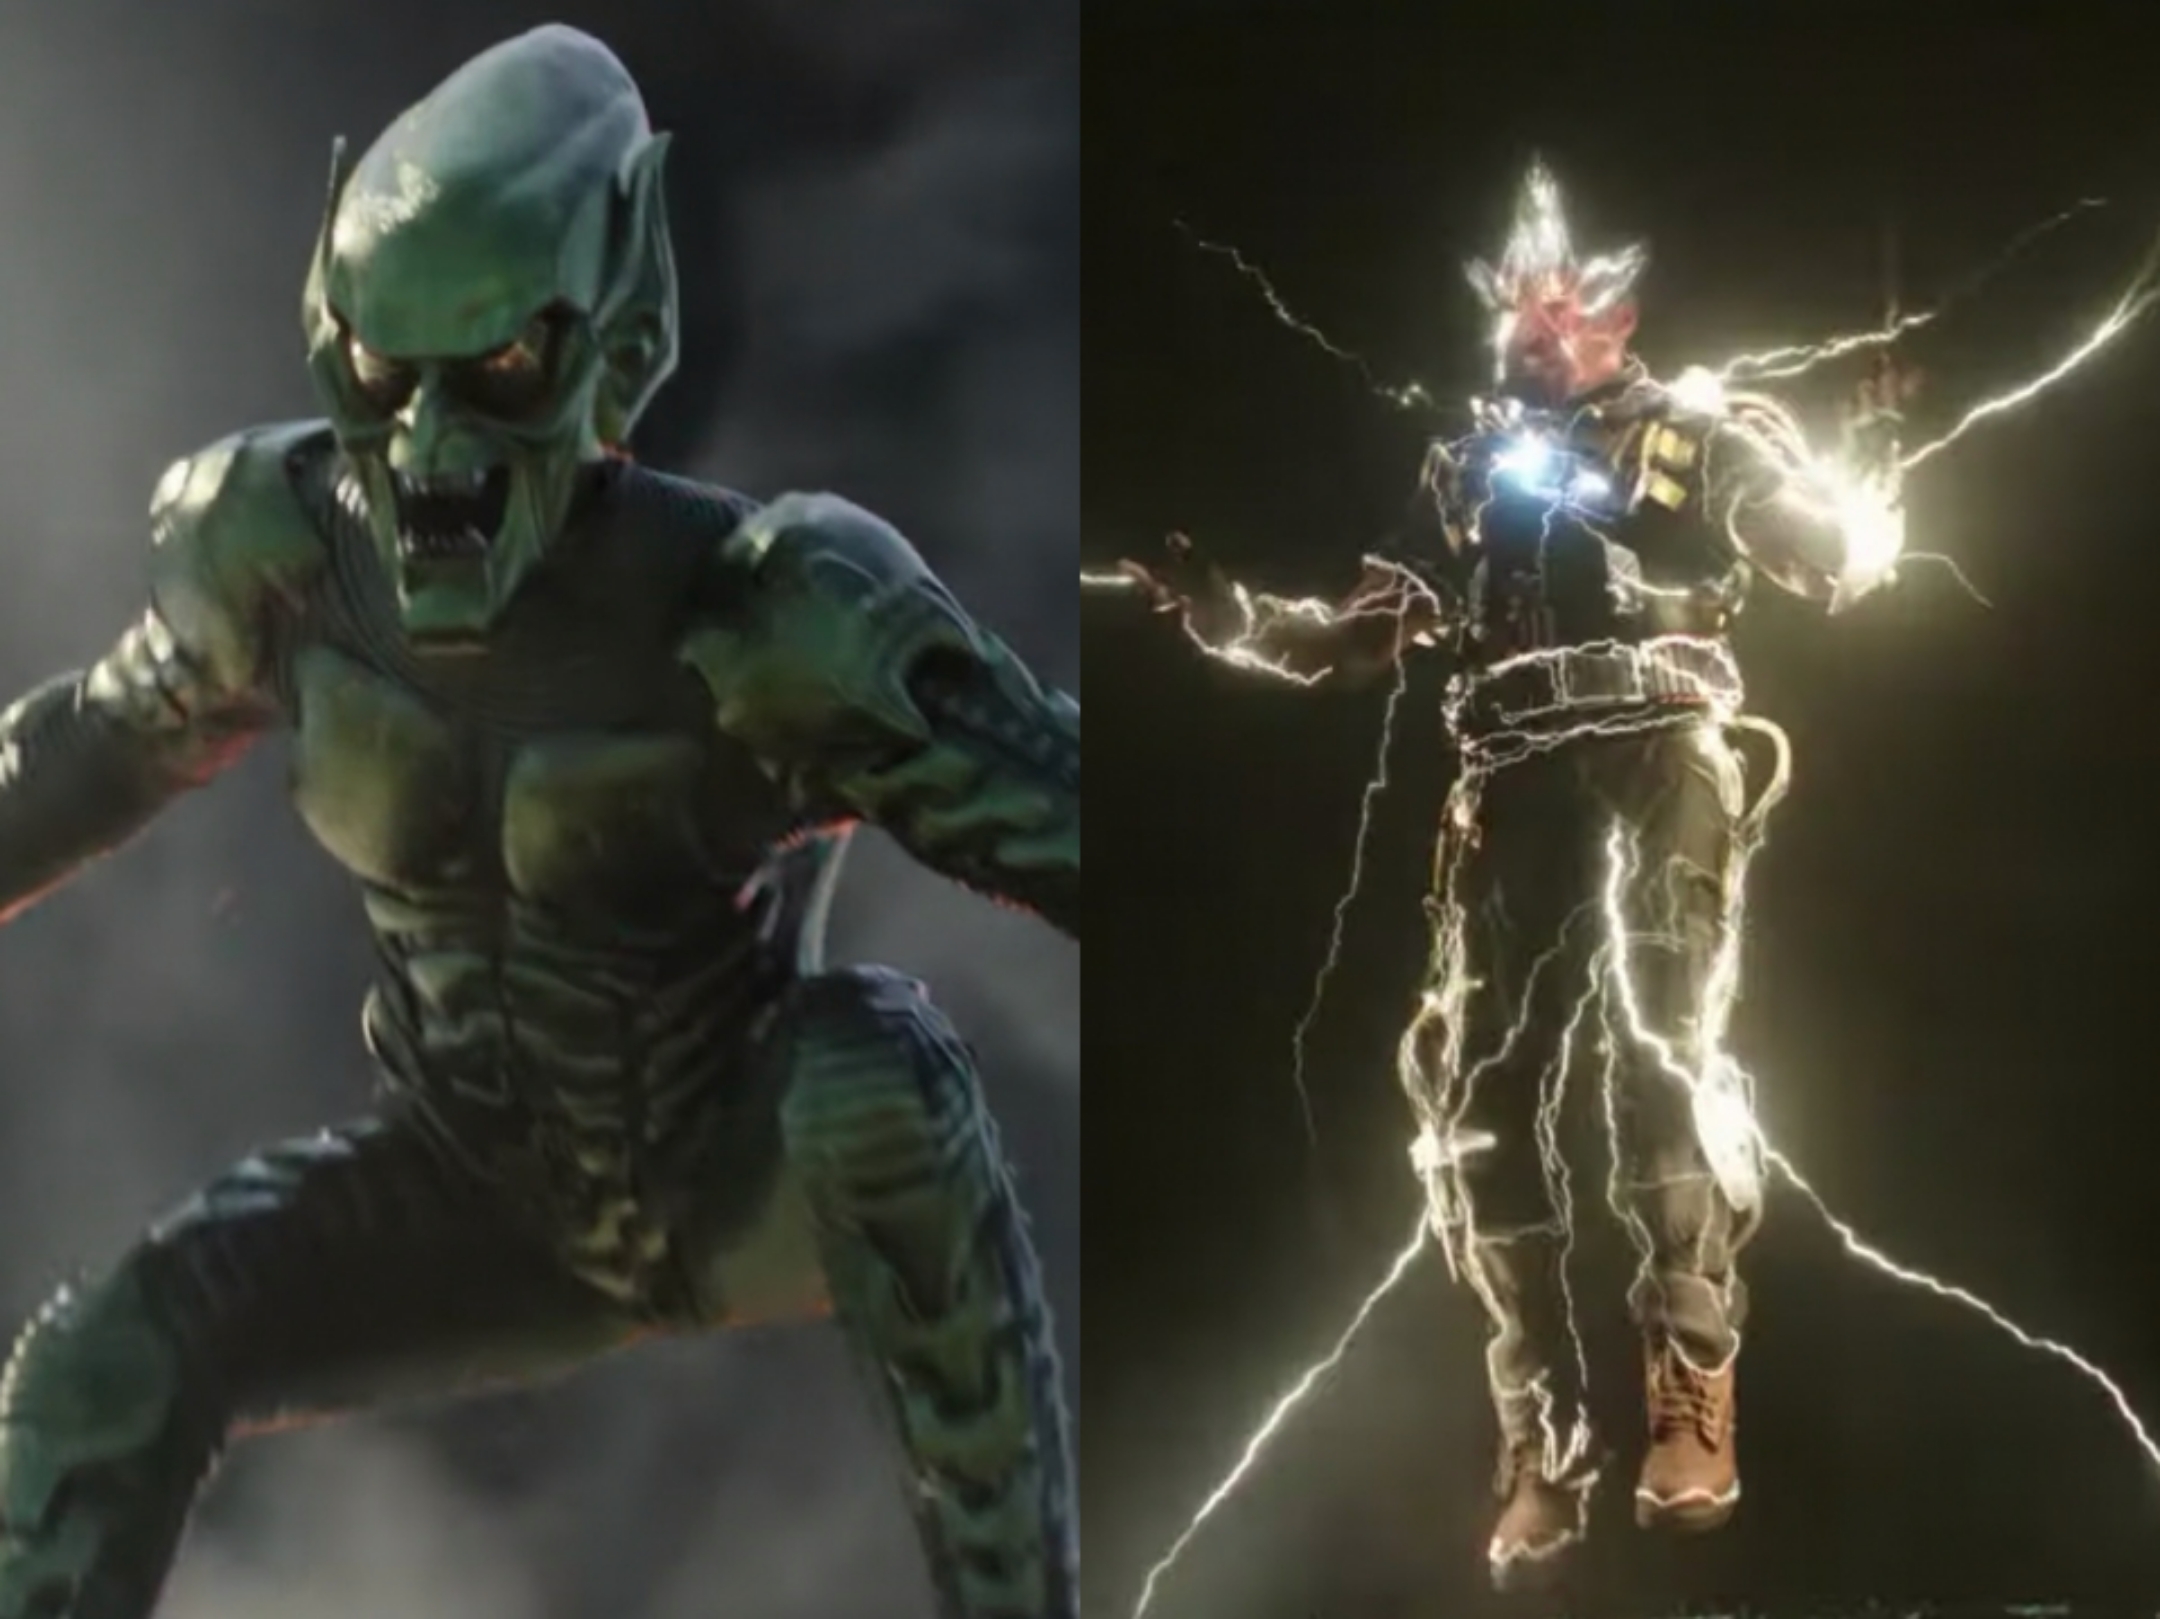 Green Goblin and Electro